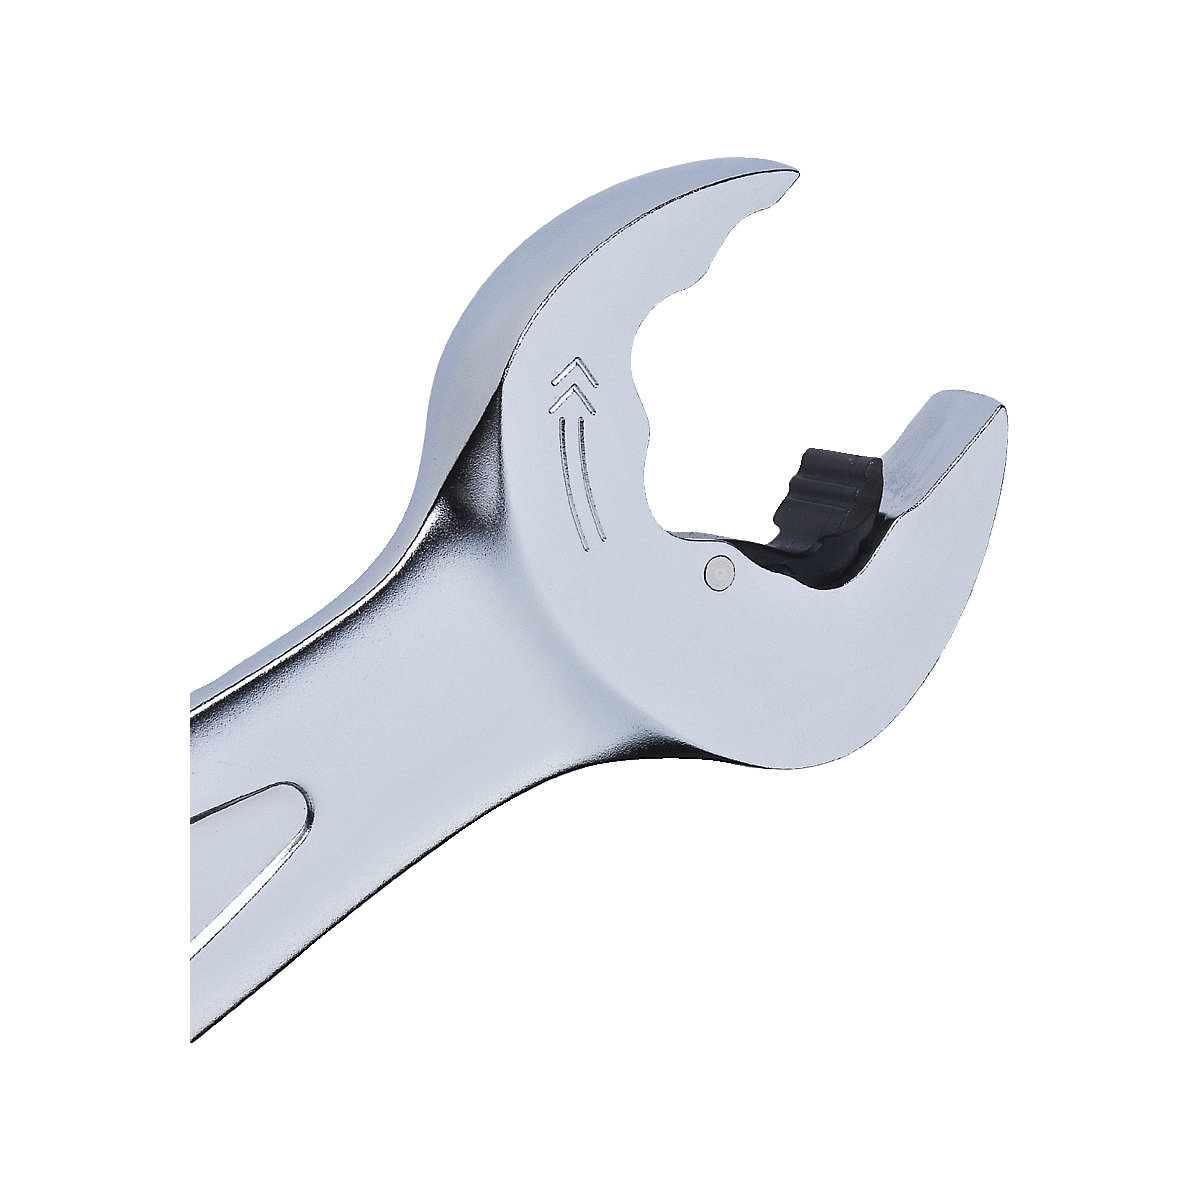 Set di chiavi a cricchetto DUO GEARplus® – KS Tools: forche inclinate di  15°